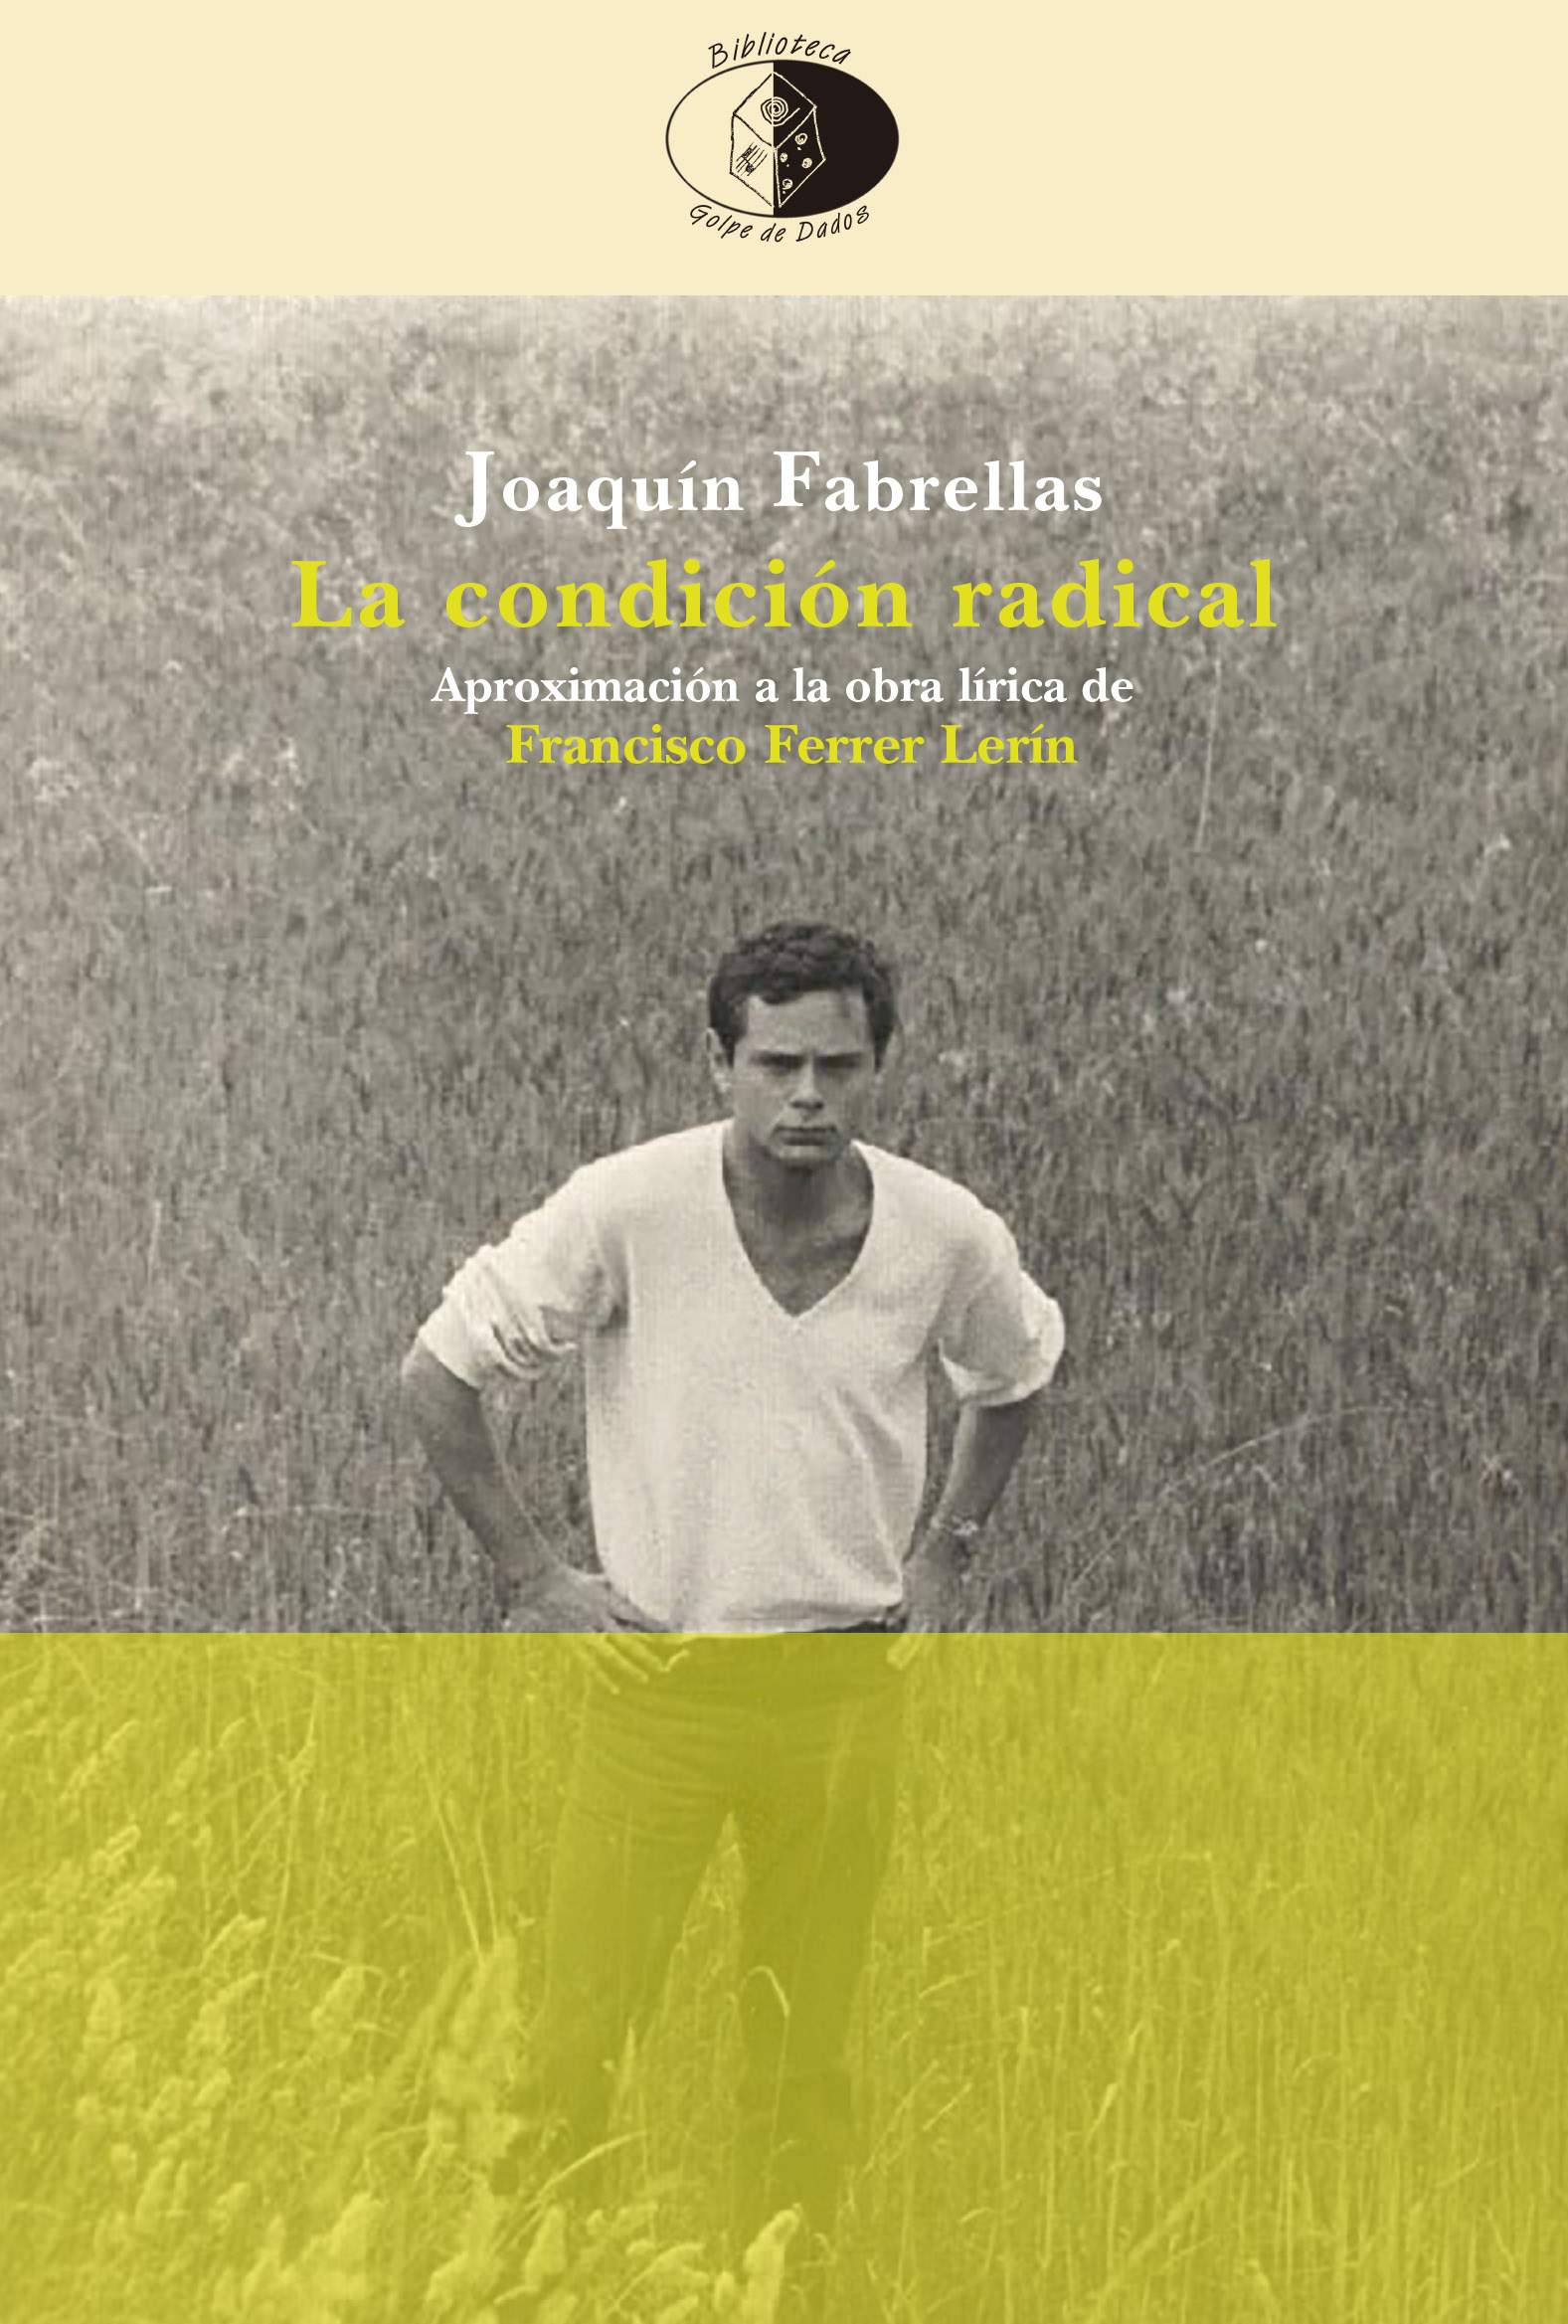 José Ventura escribe sobre La condición radical, de Joaquín Fabrellas